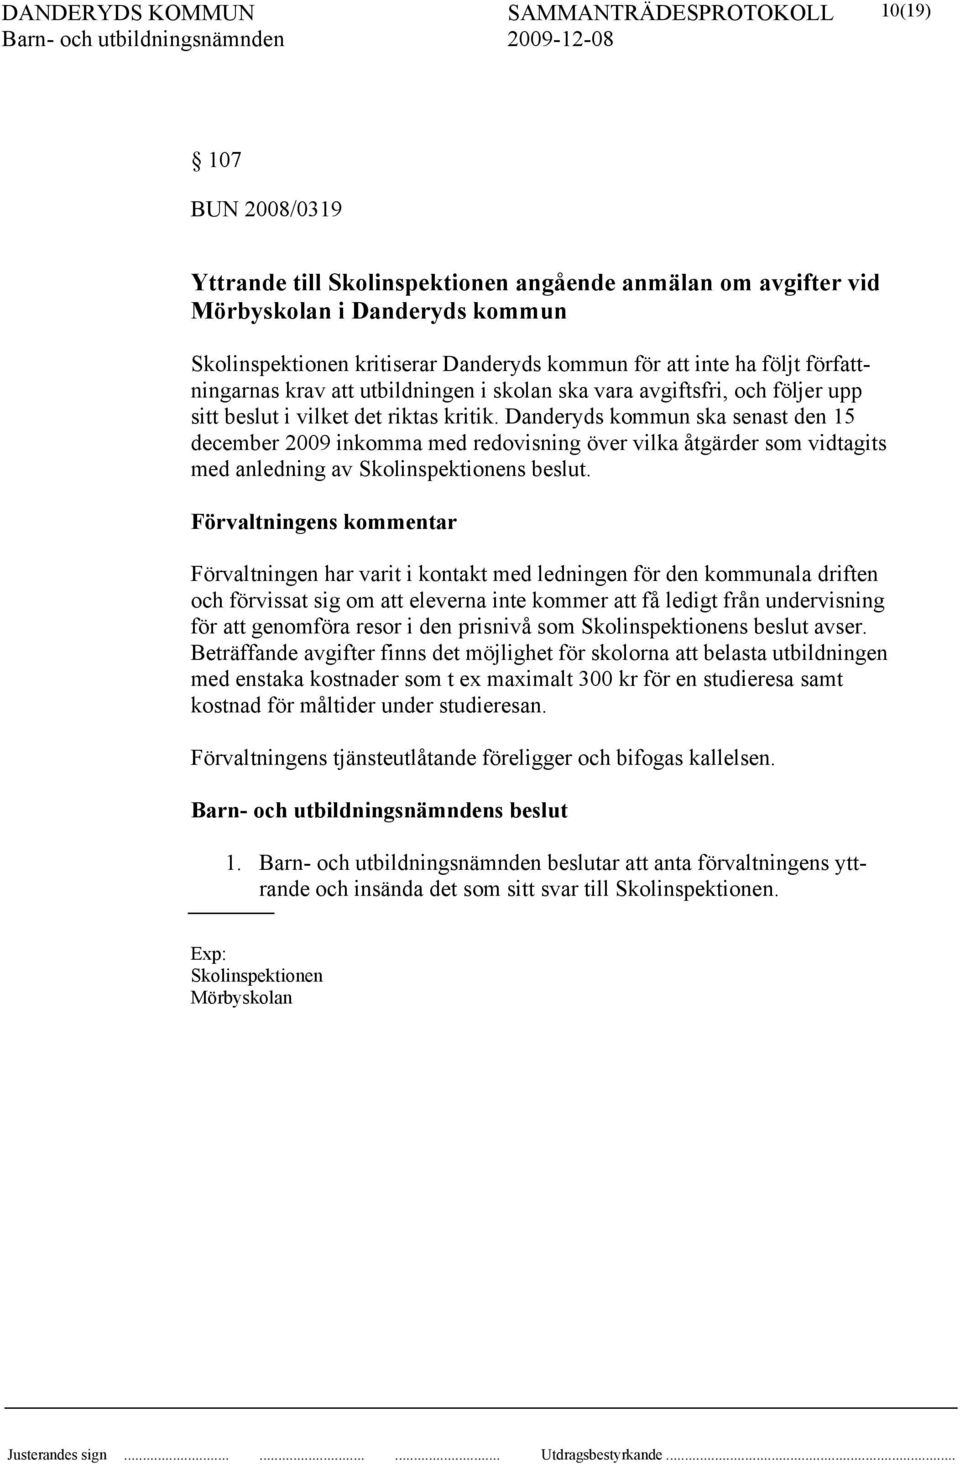 Danderyds kommun ska senast den 15 december 2009 inkomma med redovisning över vilka åtgärder som vidtagits med anledning av Skolinspektionens beslut.